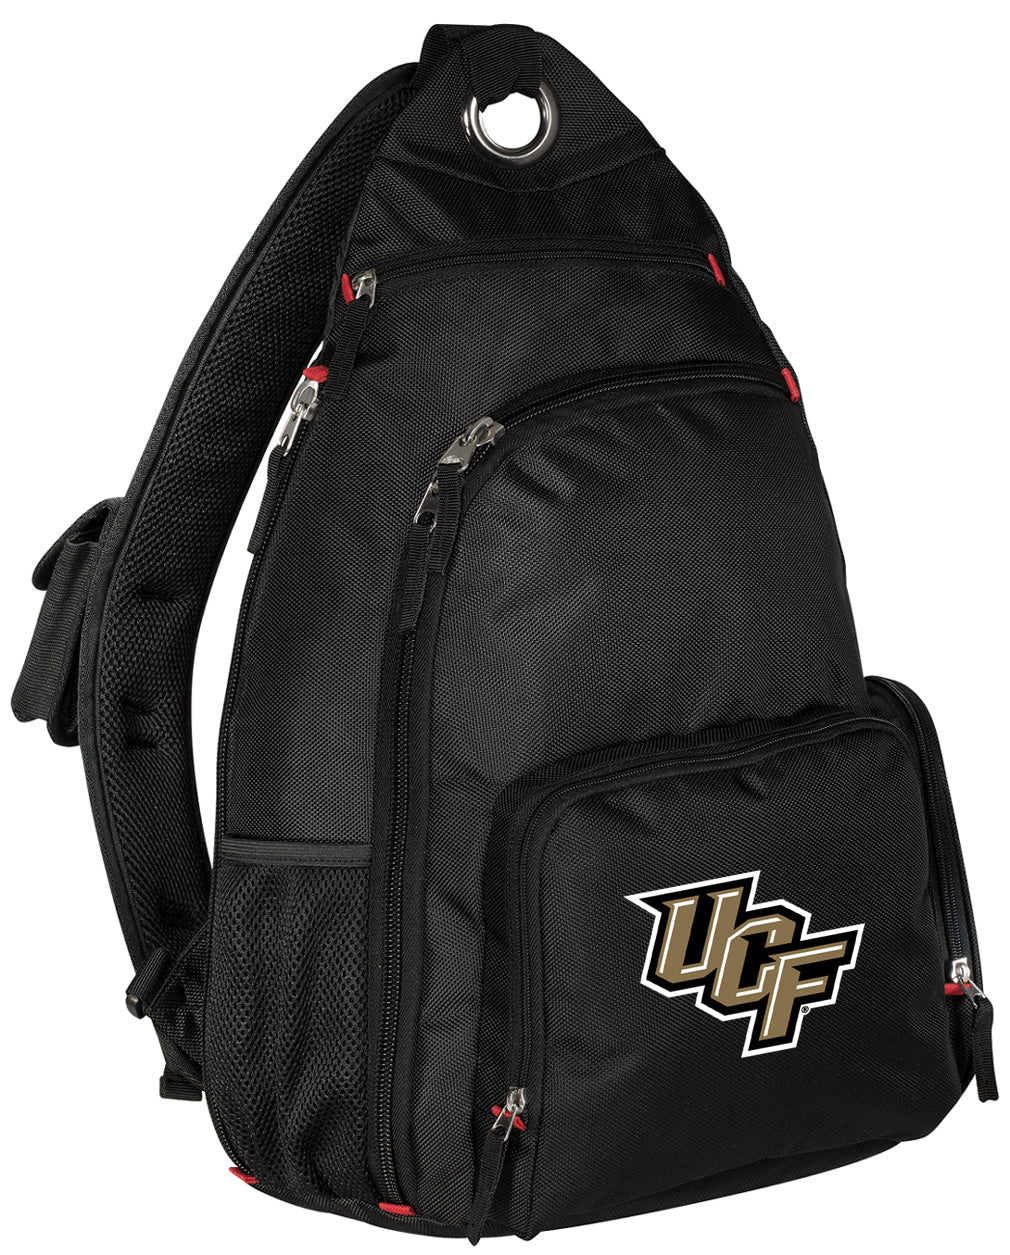 UCF Sling Backpack Central Florida Crossbody Bag